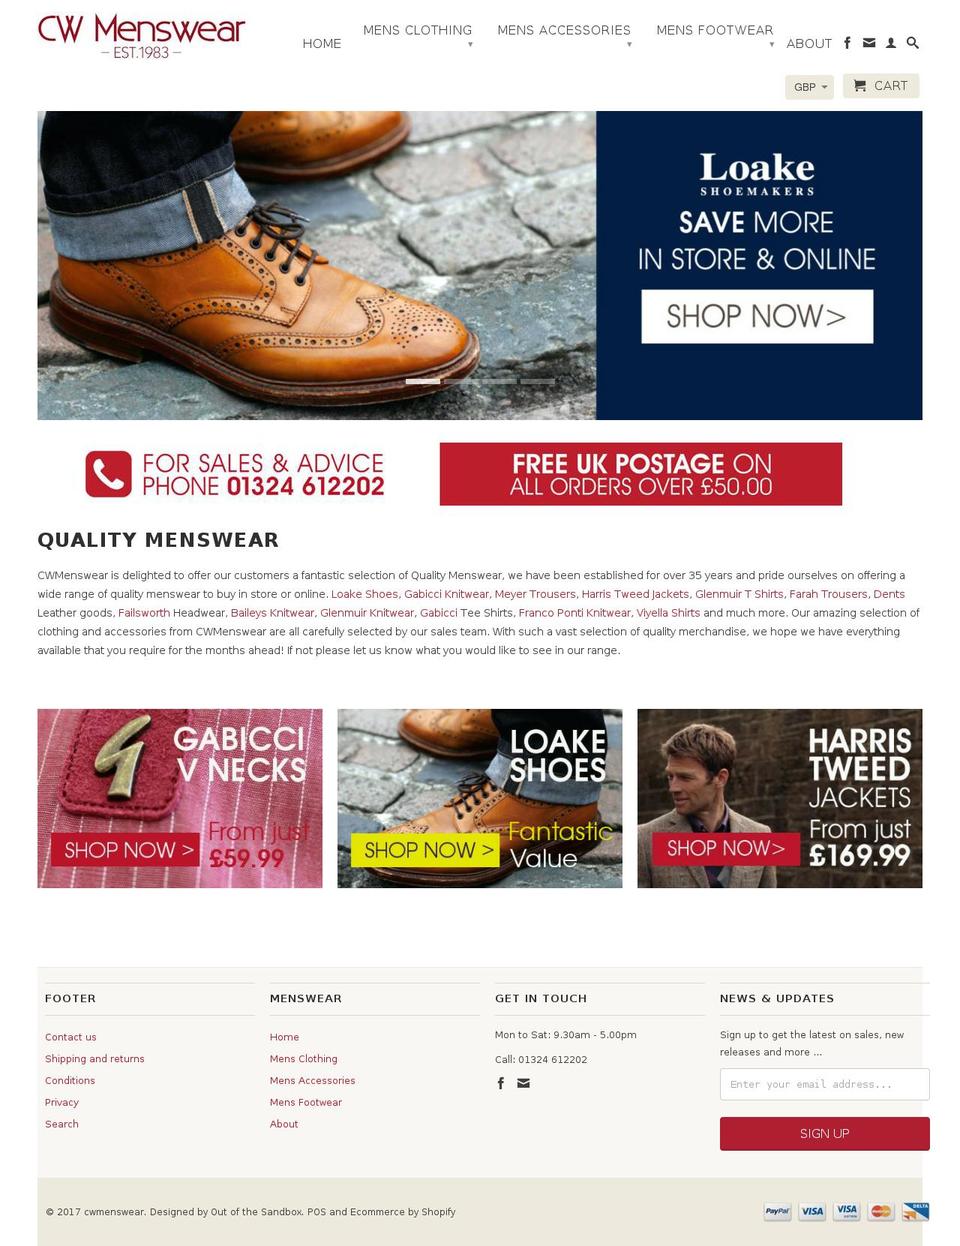 cwmenswear.co.uk shopify website screenshot